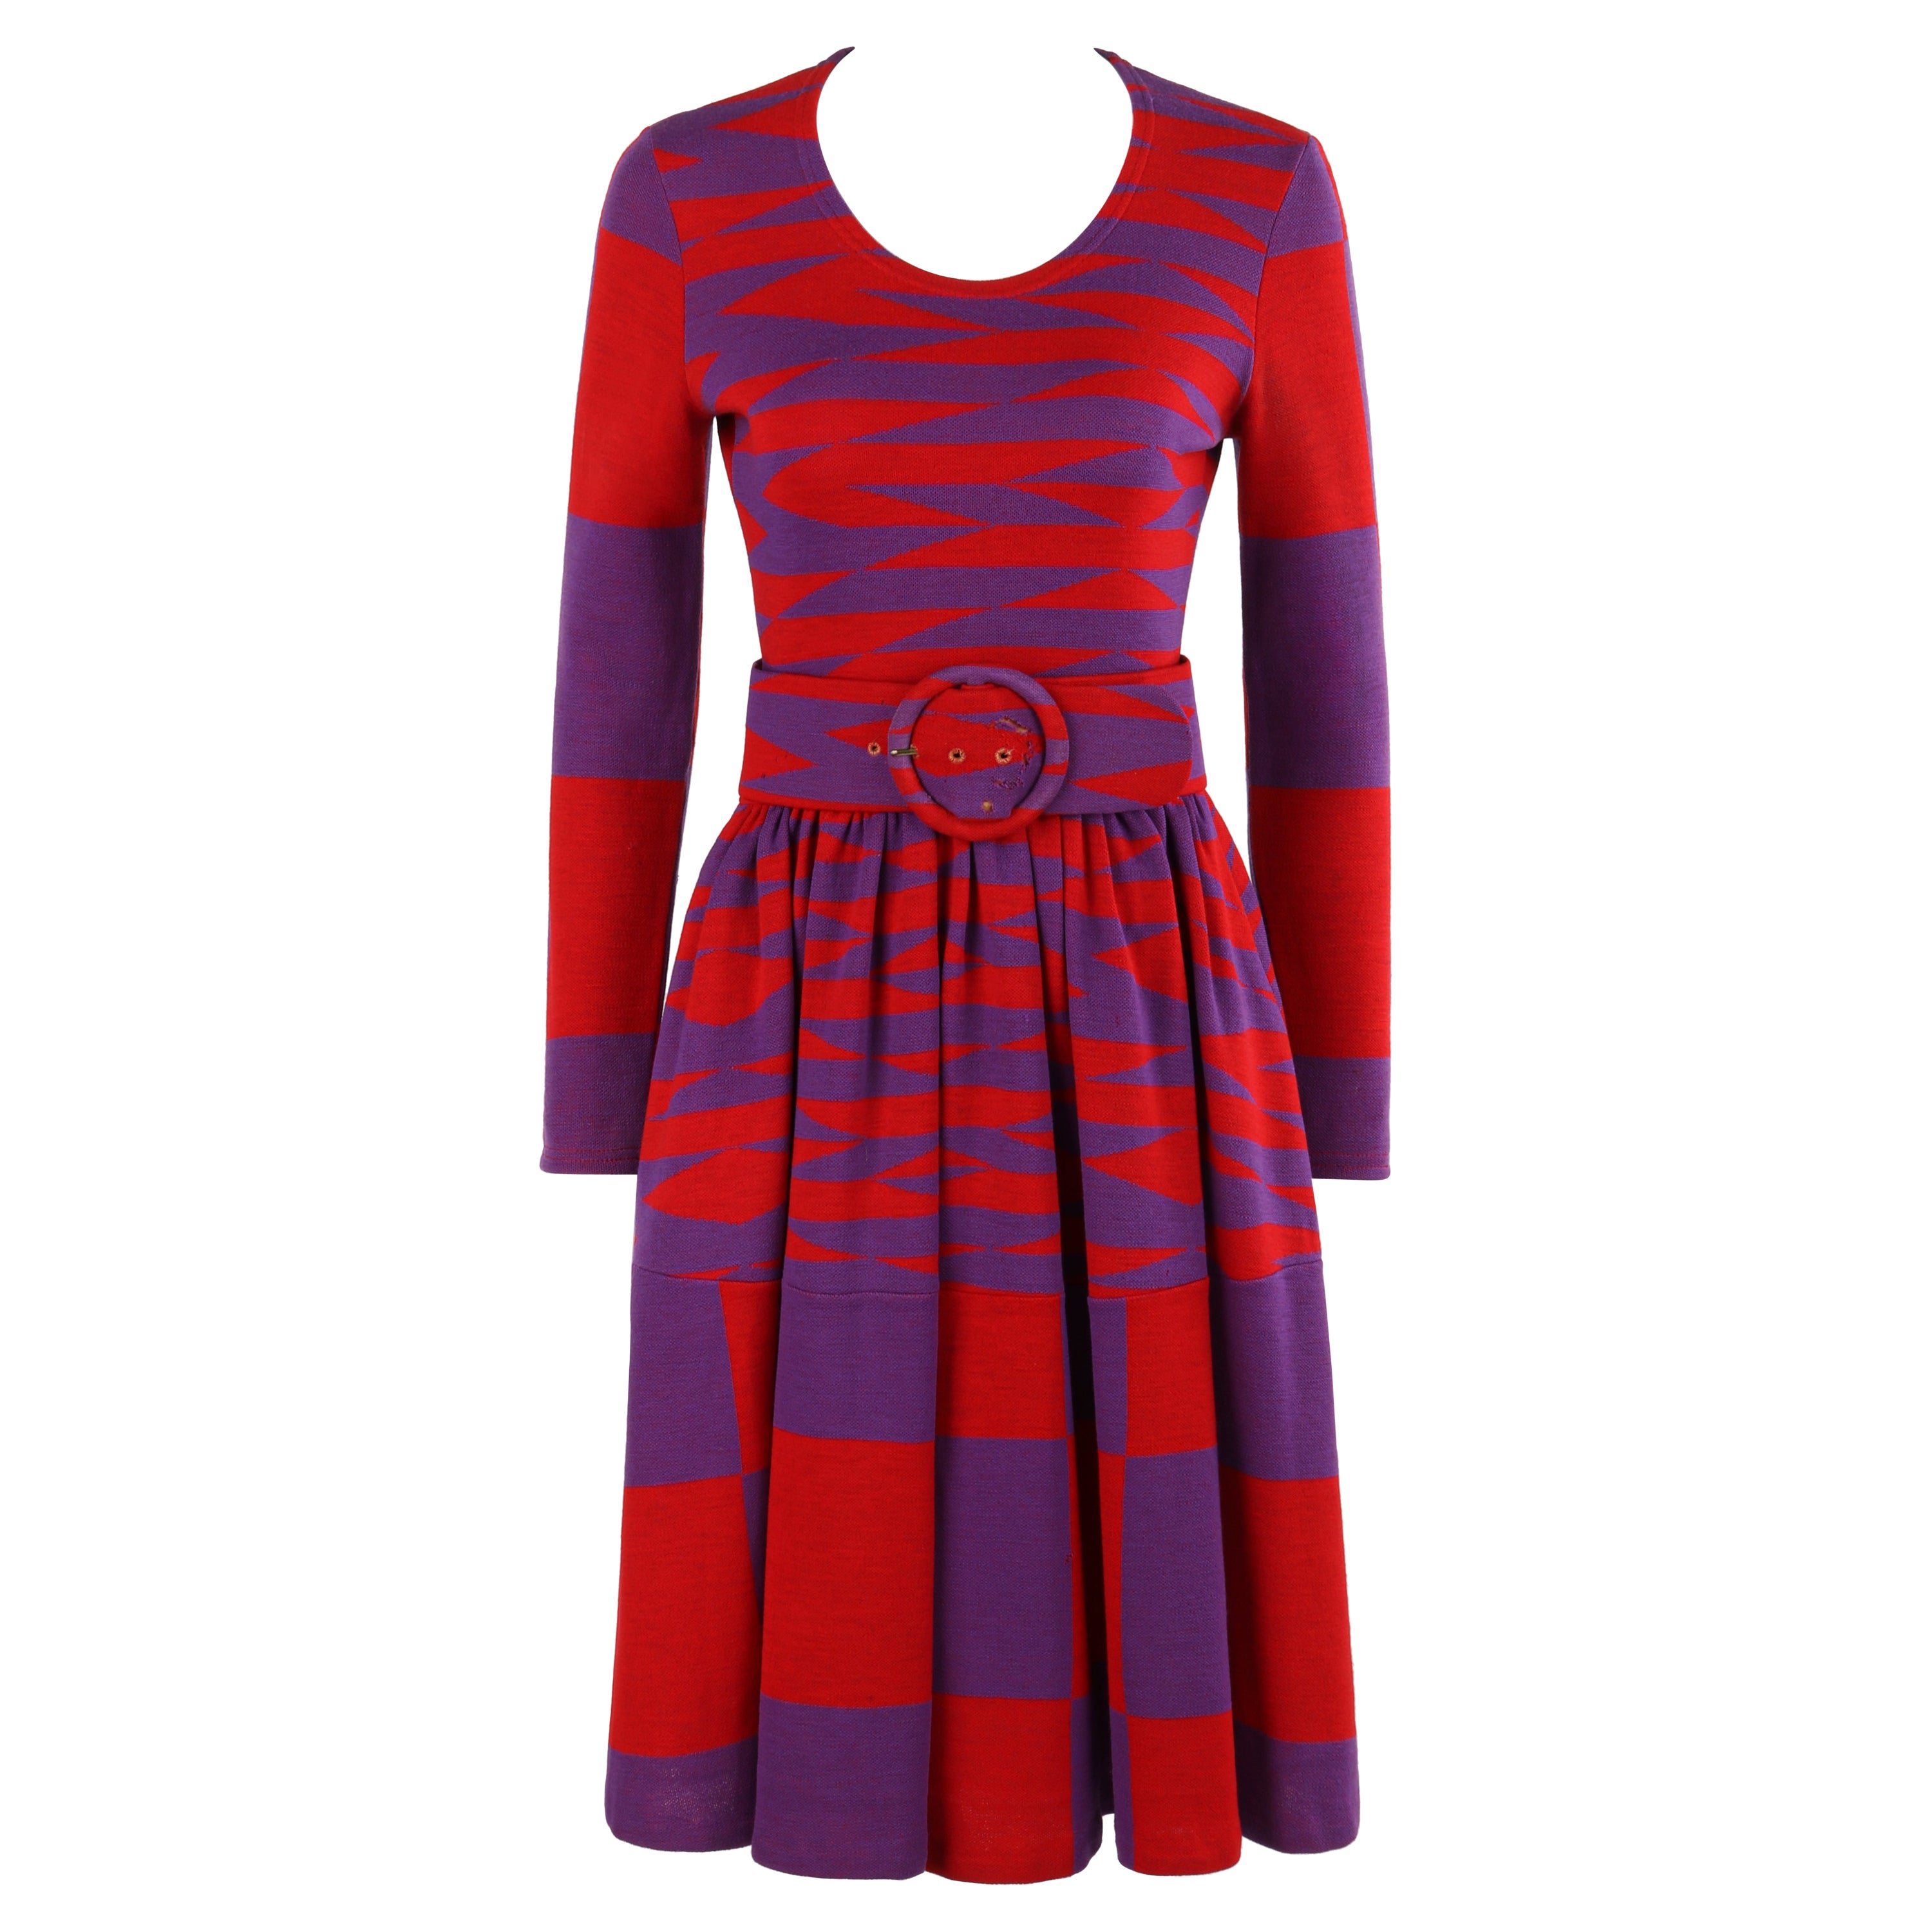 RUDI GERNREICH Harmon Knitwear c.1971 Purple Red Mod Op Art Wool Knit Day Dress For Sale